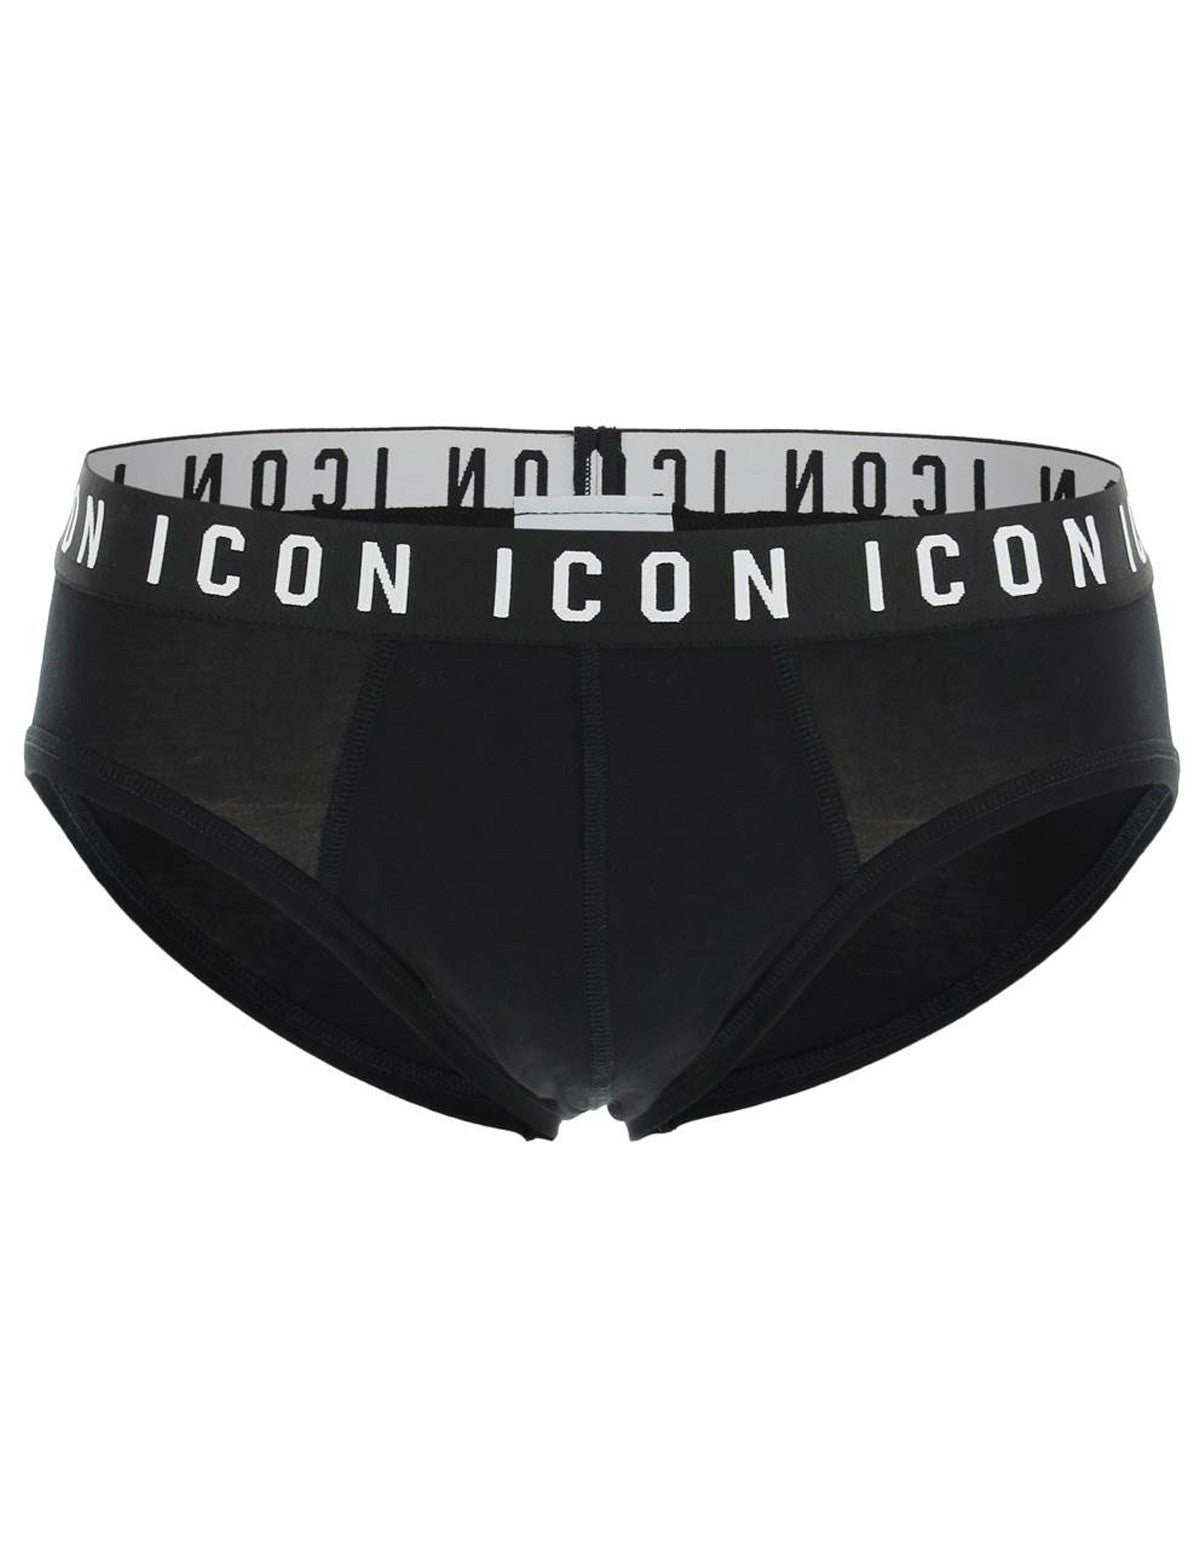 dsquared2-icon-underwear-brief.jpg